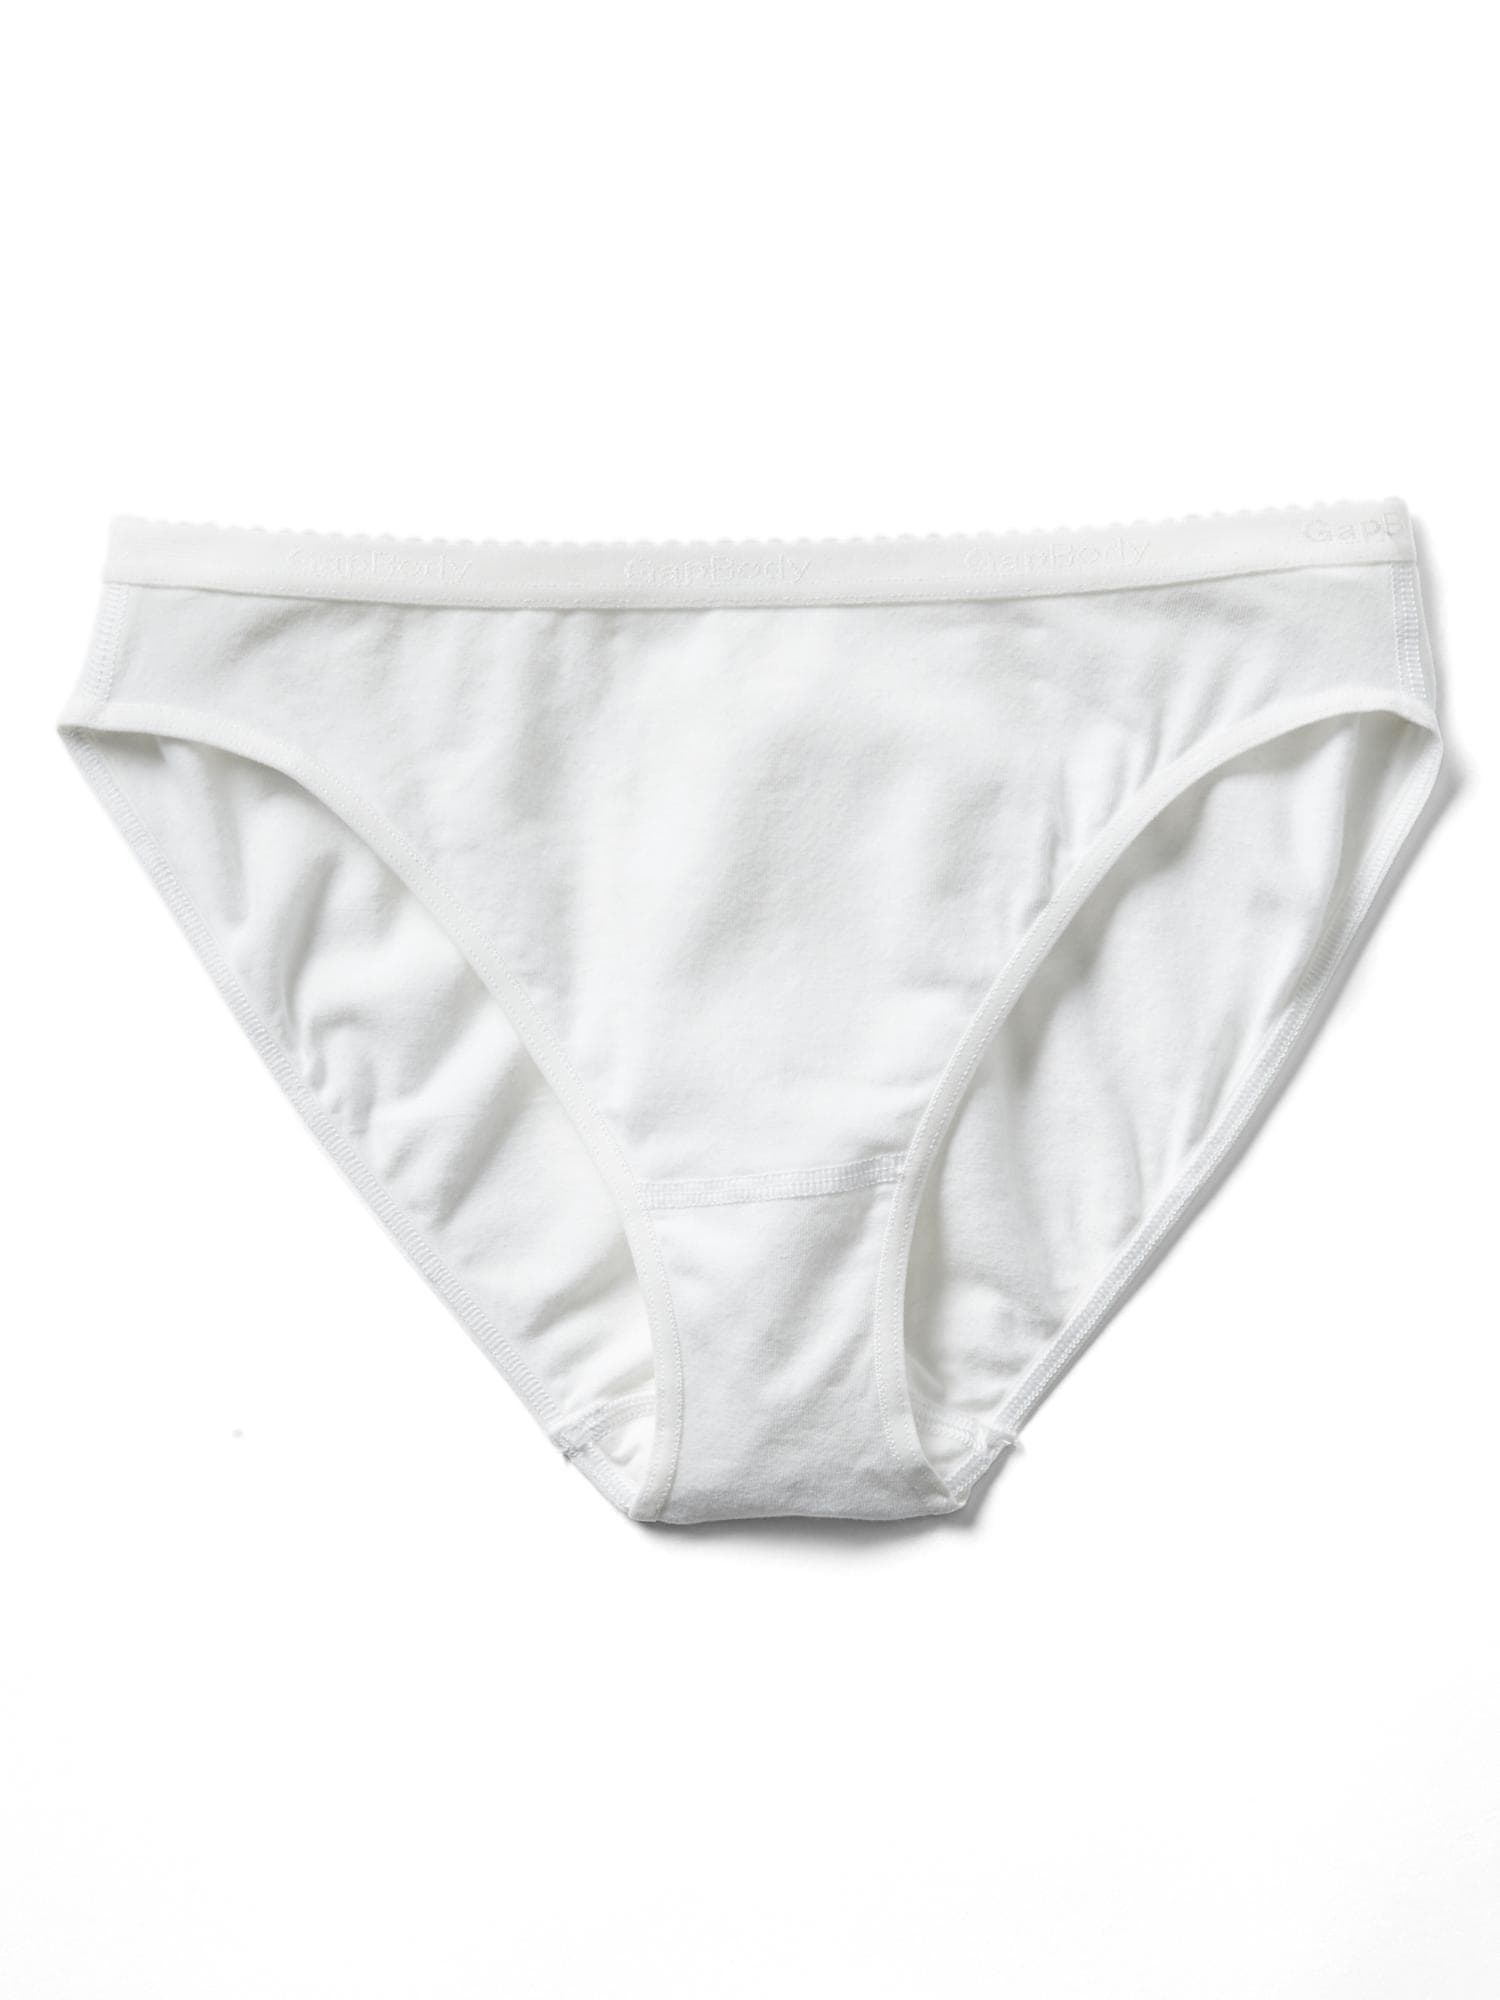 Essentials Women's Cotton High Leg Brief Underwear - Import It All